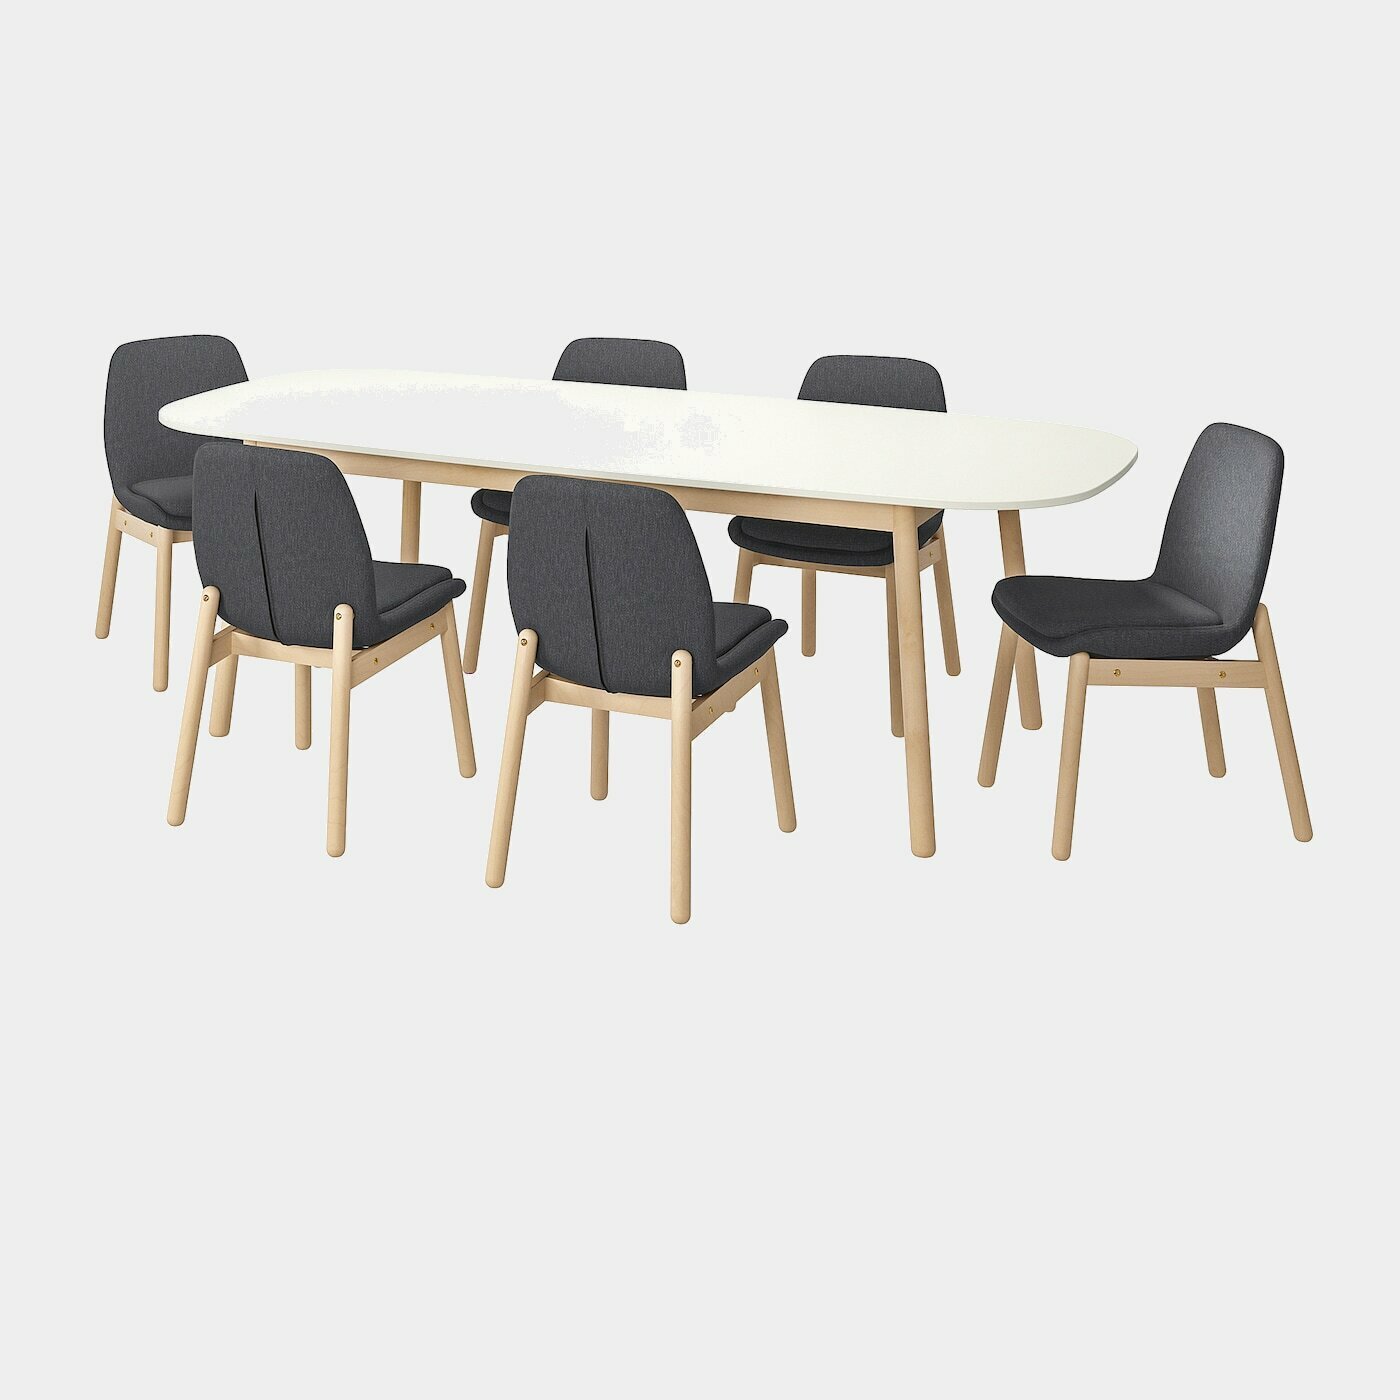 VEDBO / VEDBO Tisch und 6 Stühle  -  - Möbel Ideen für dein Zuhause von Home Trends. Möbel Trends von Social Media Influencer für dein Skandi Zuhause.